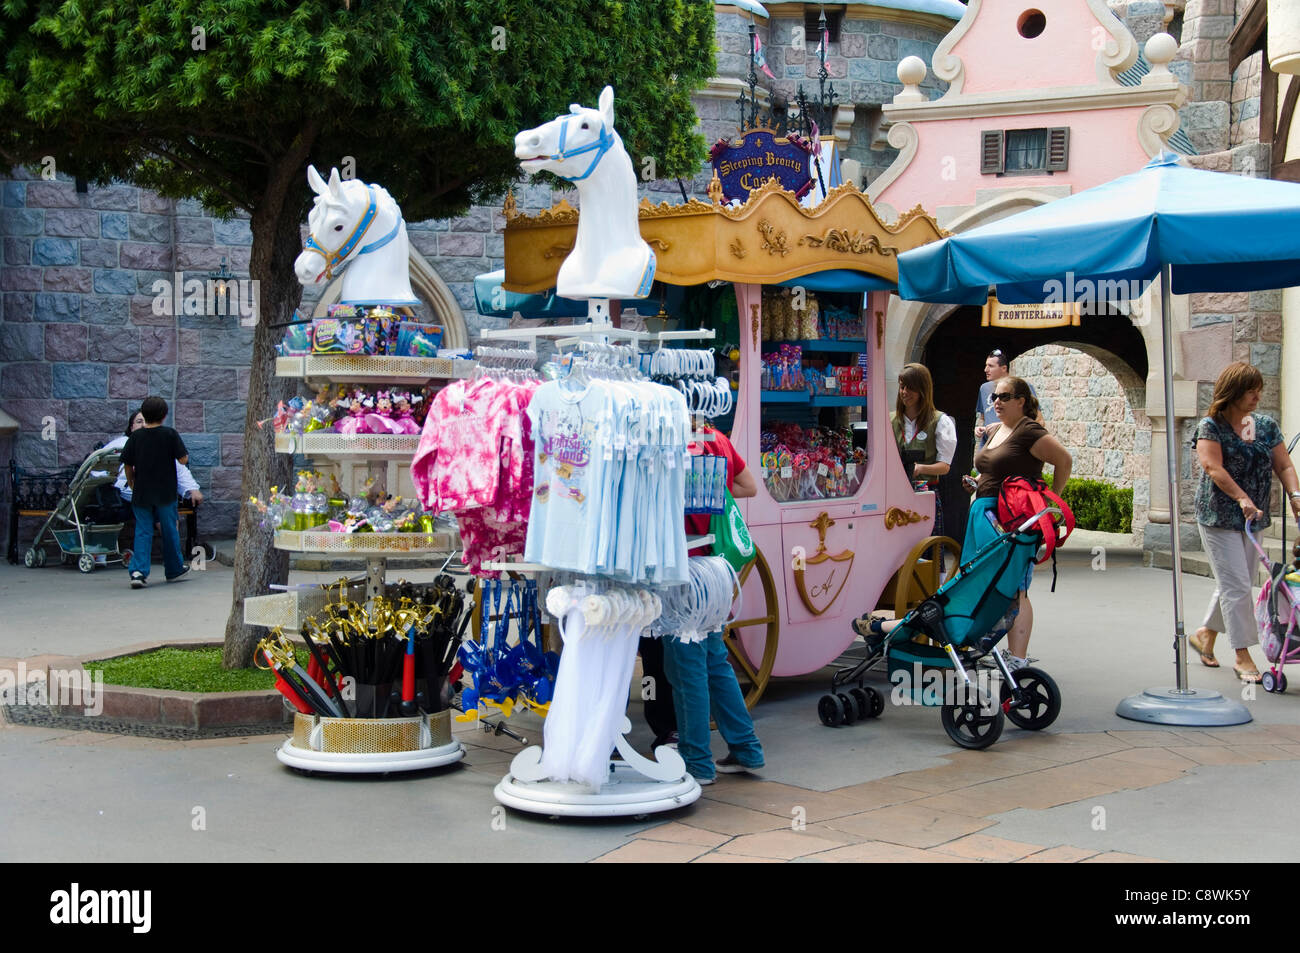 Magasin de jouets à Disneyland en Californie Parc d'USA Banque D'Images